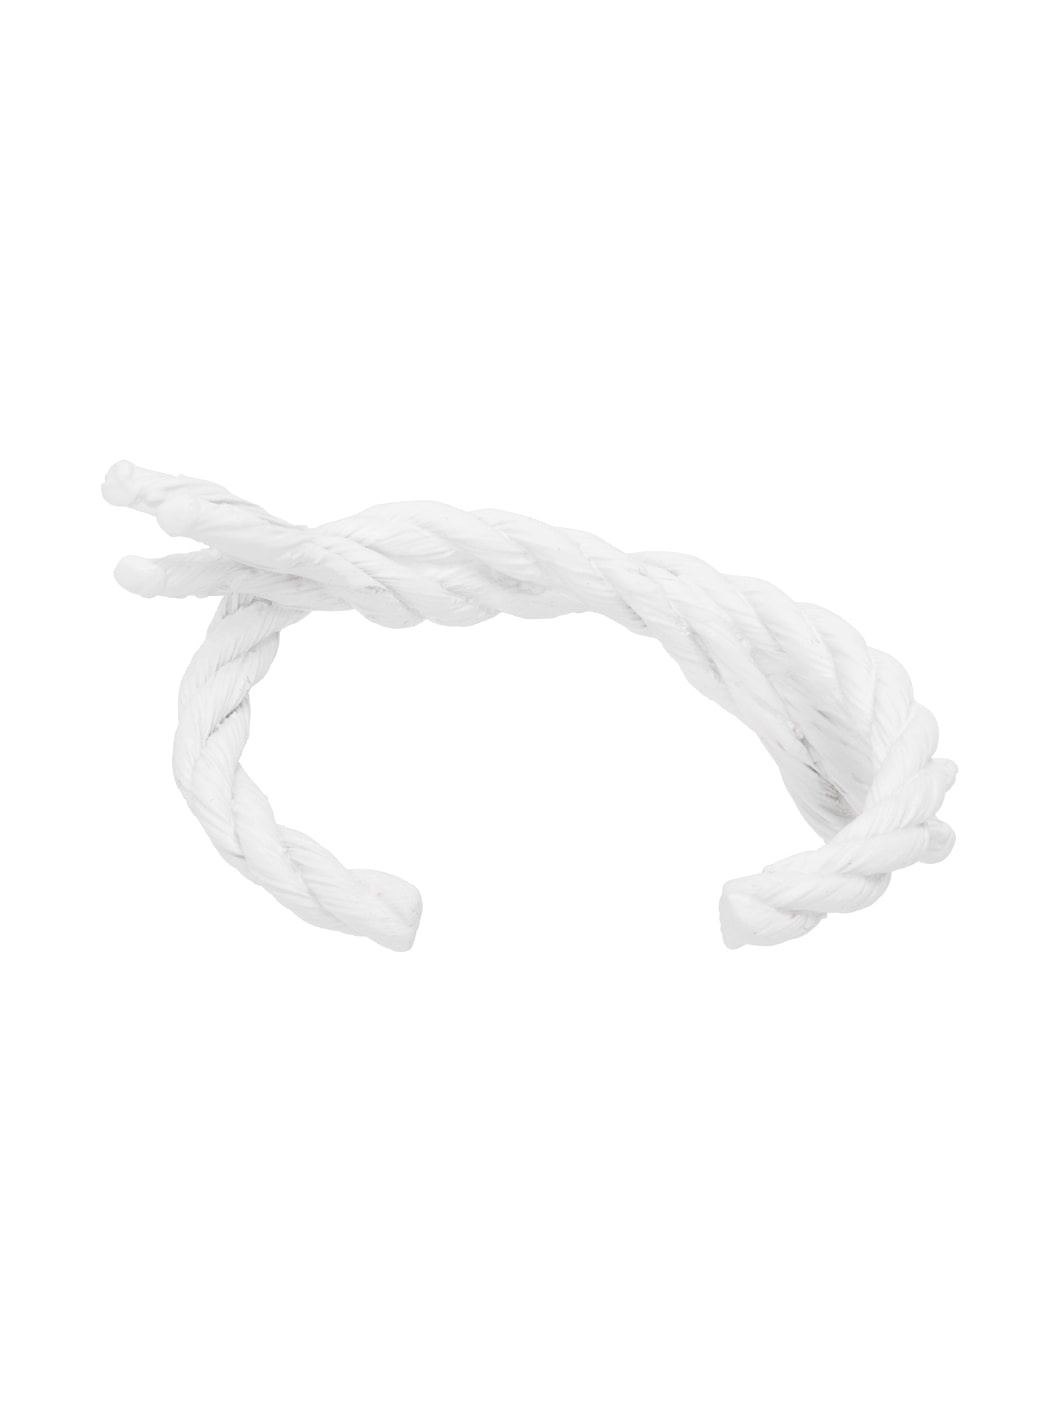 White Knit Bracelet - 2